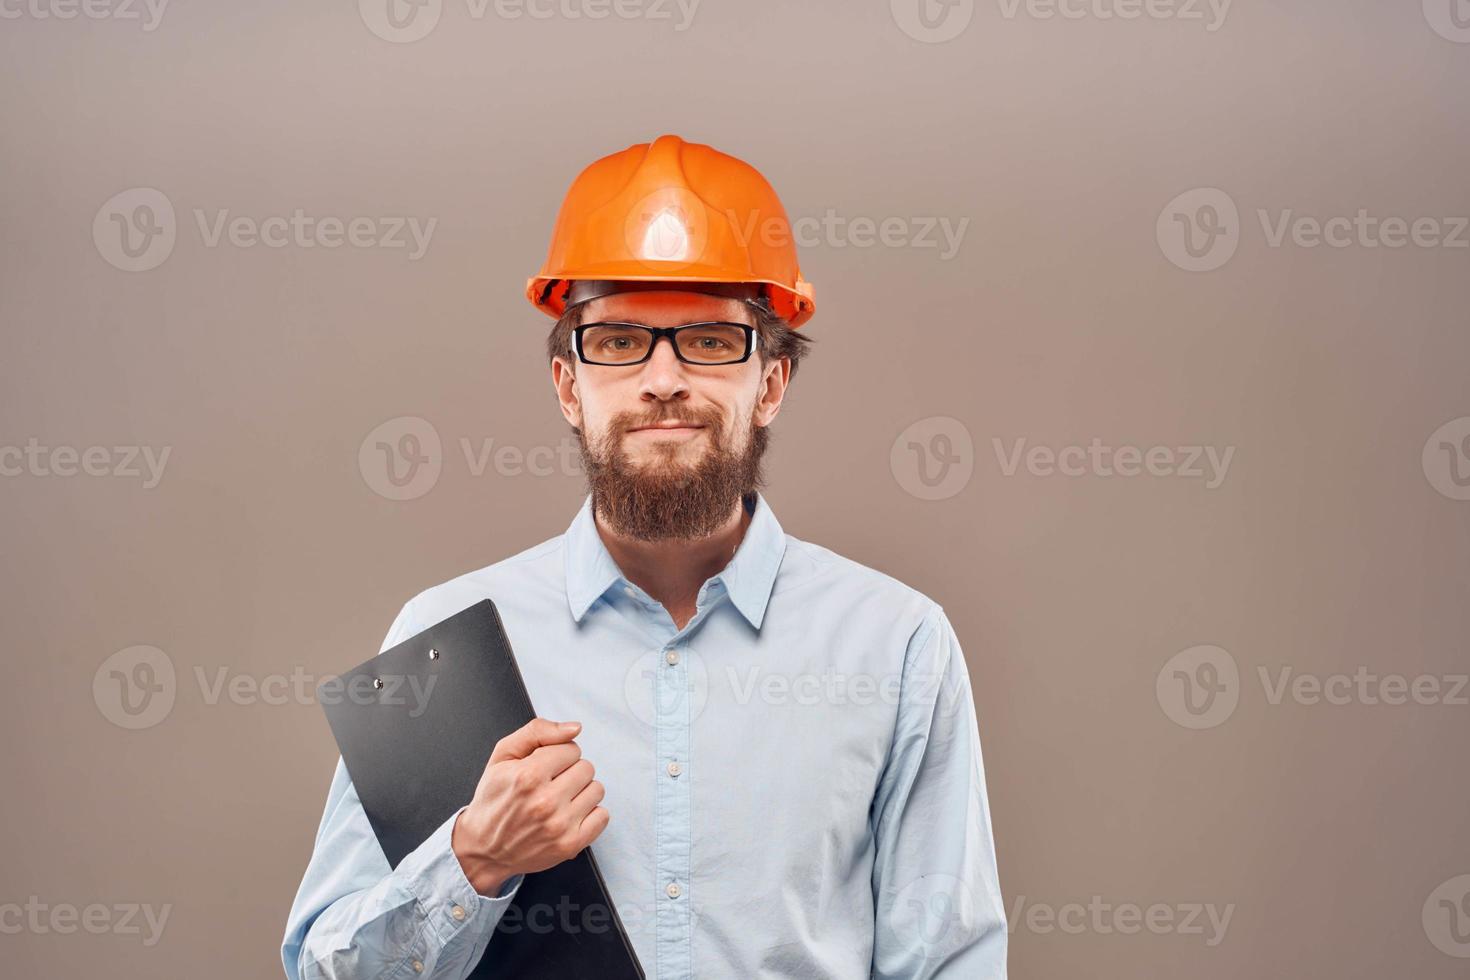 homme dans travail uniforme professionnel construction mode de vie photo